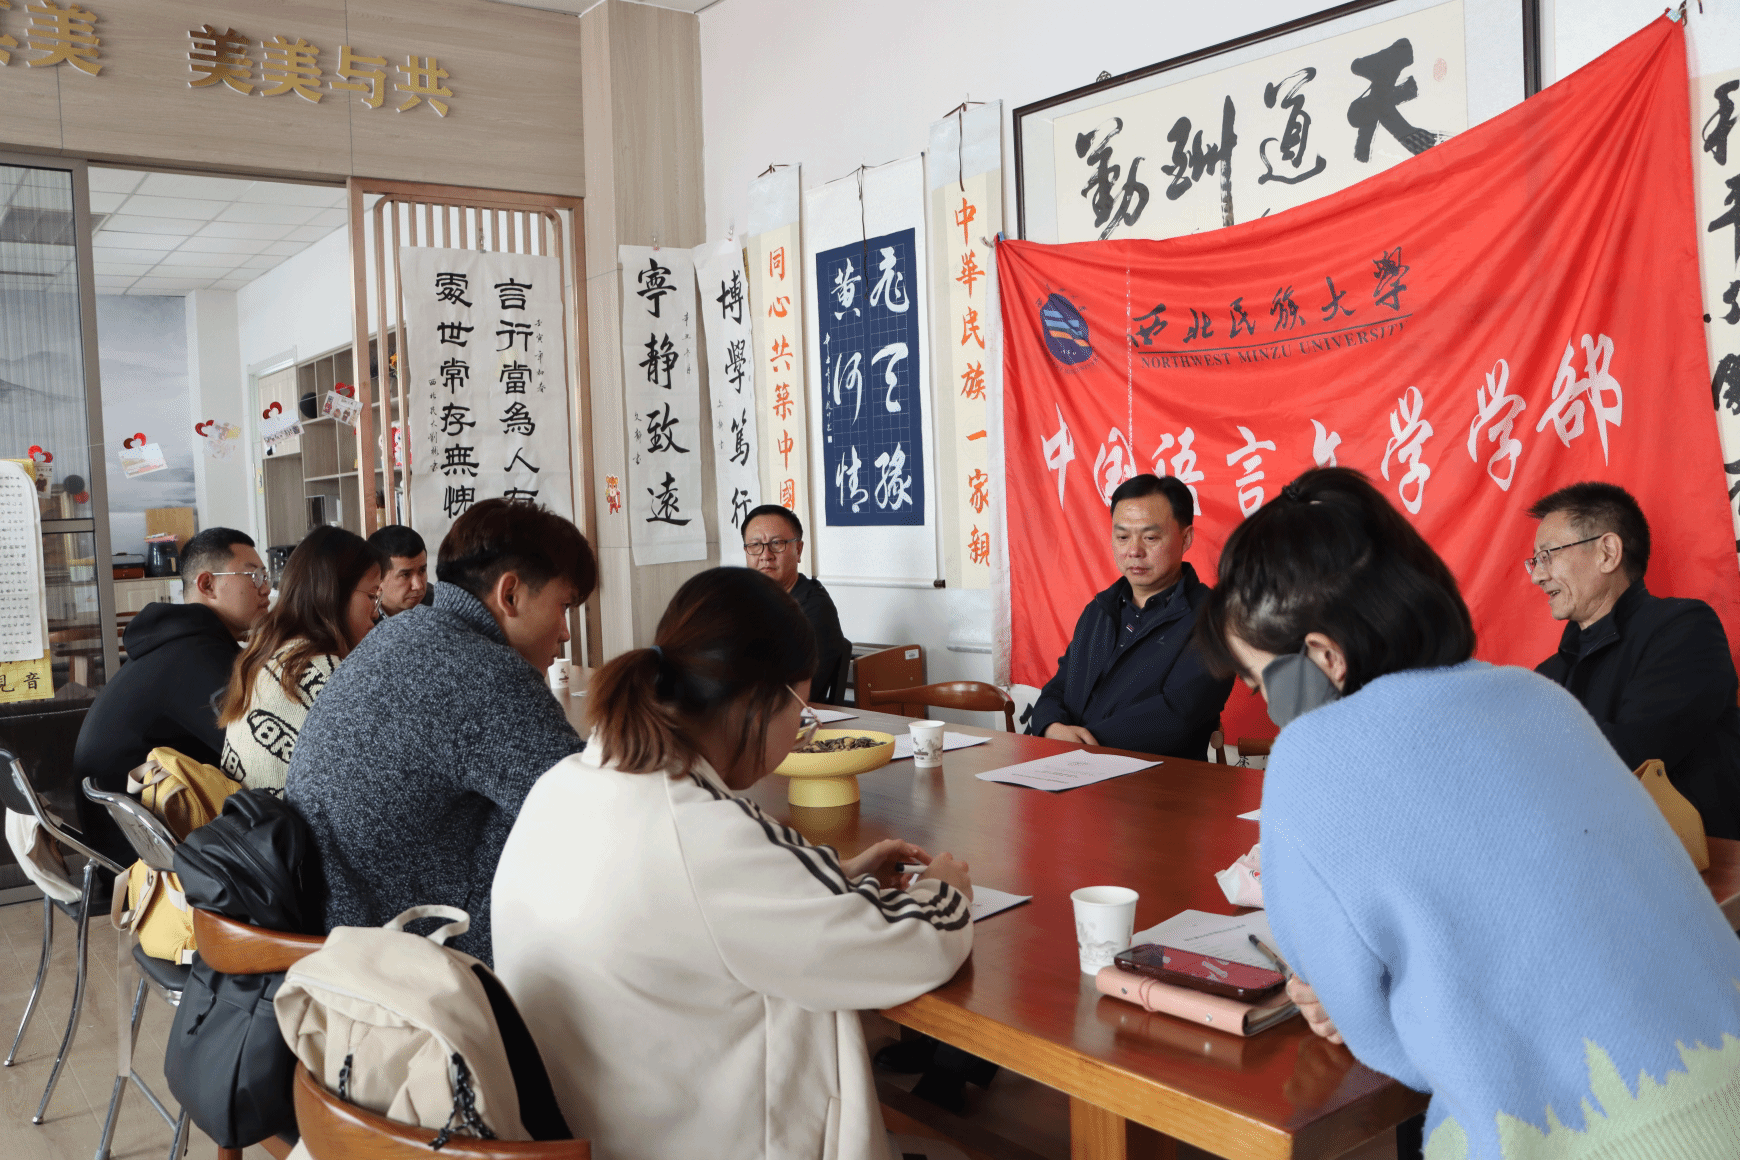 中国语言文学学部举办 第二期思政下午茶活动